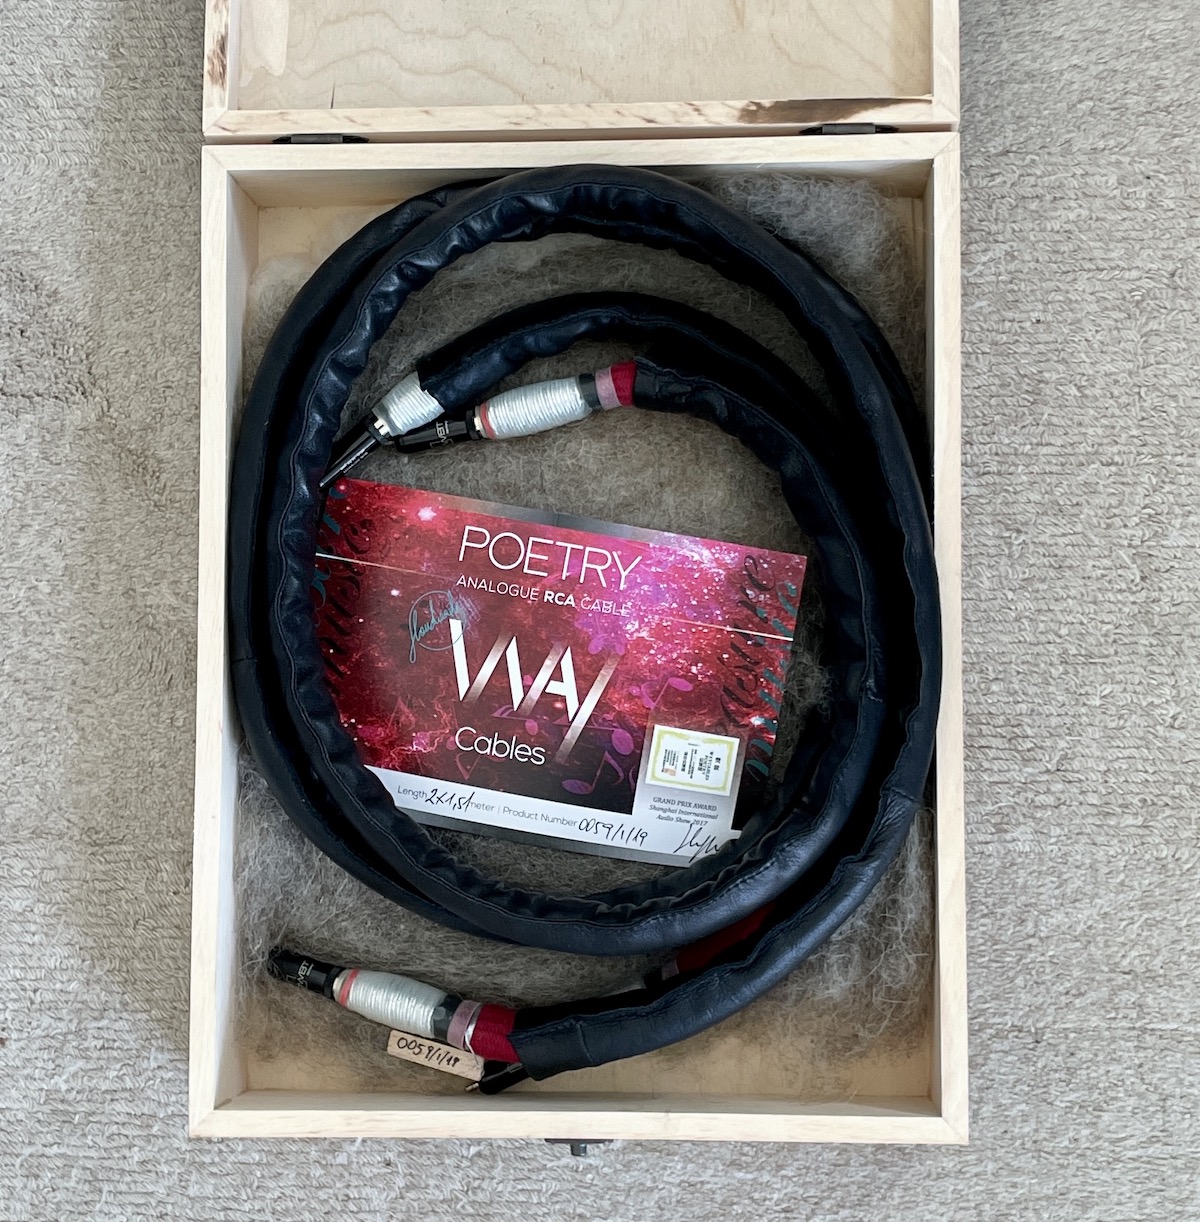 Way Cables Poetry RCA 1,5m, Demo-Kabel, mit WBT Silber-Cinchstecker, 2 Jahre Garantie, Sonderpreis